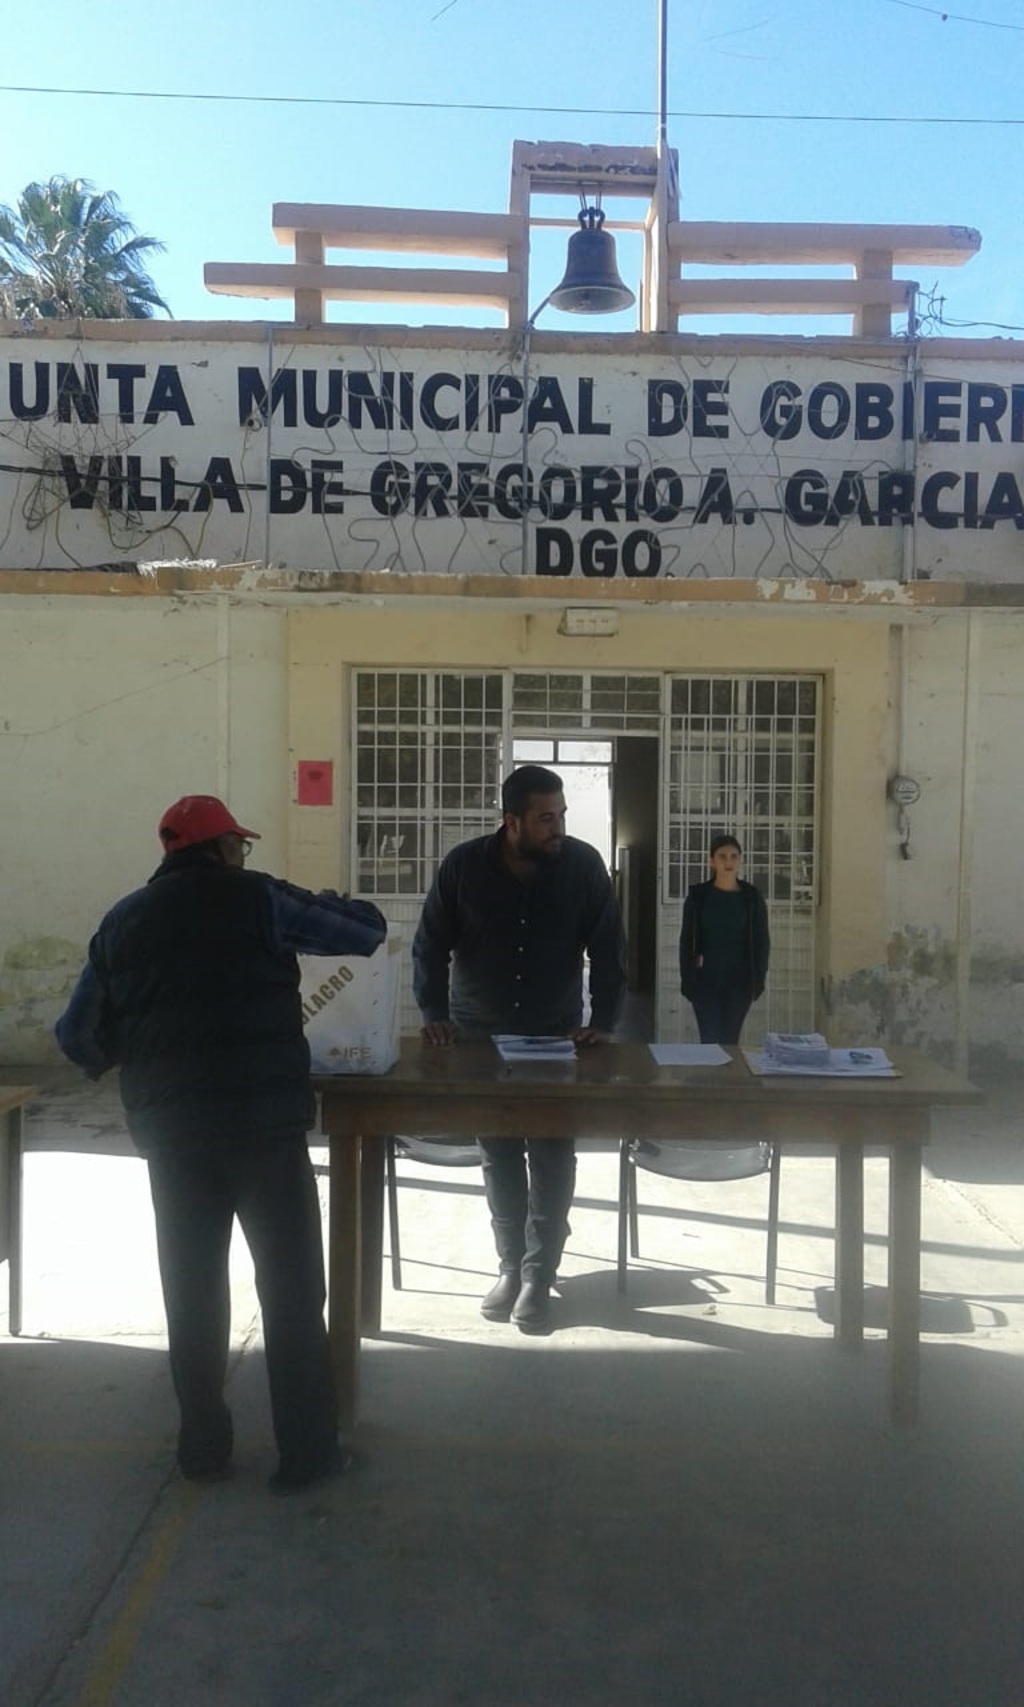 El miércoles se realizará la elección de la Junta Municipal de Gobierno en villa de Gregorio A. García. (EL SIGLO DE TORREÓN)